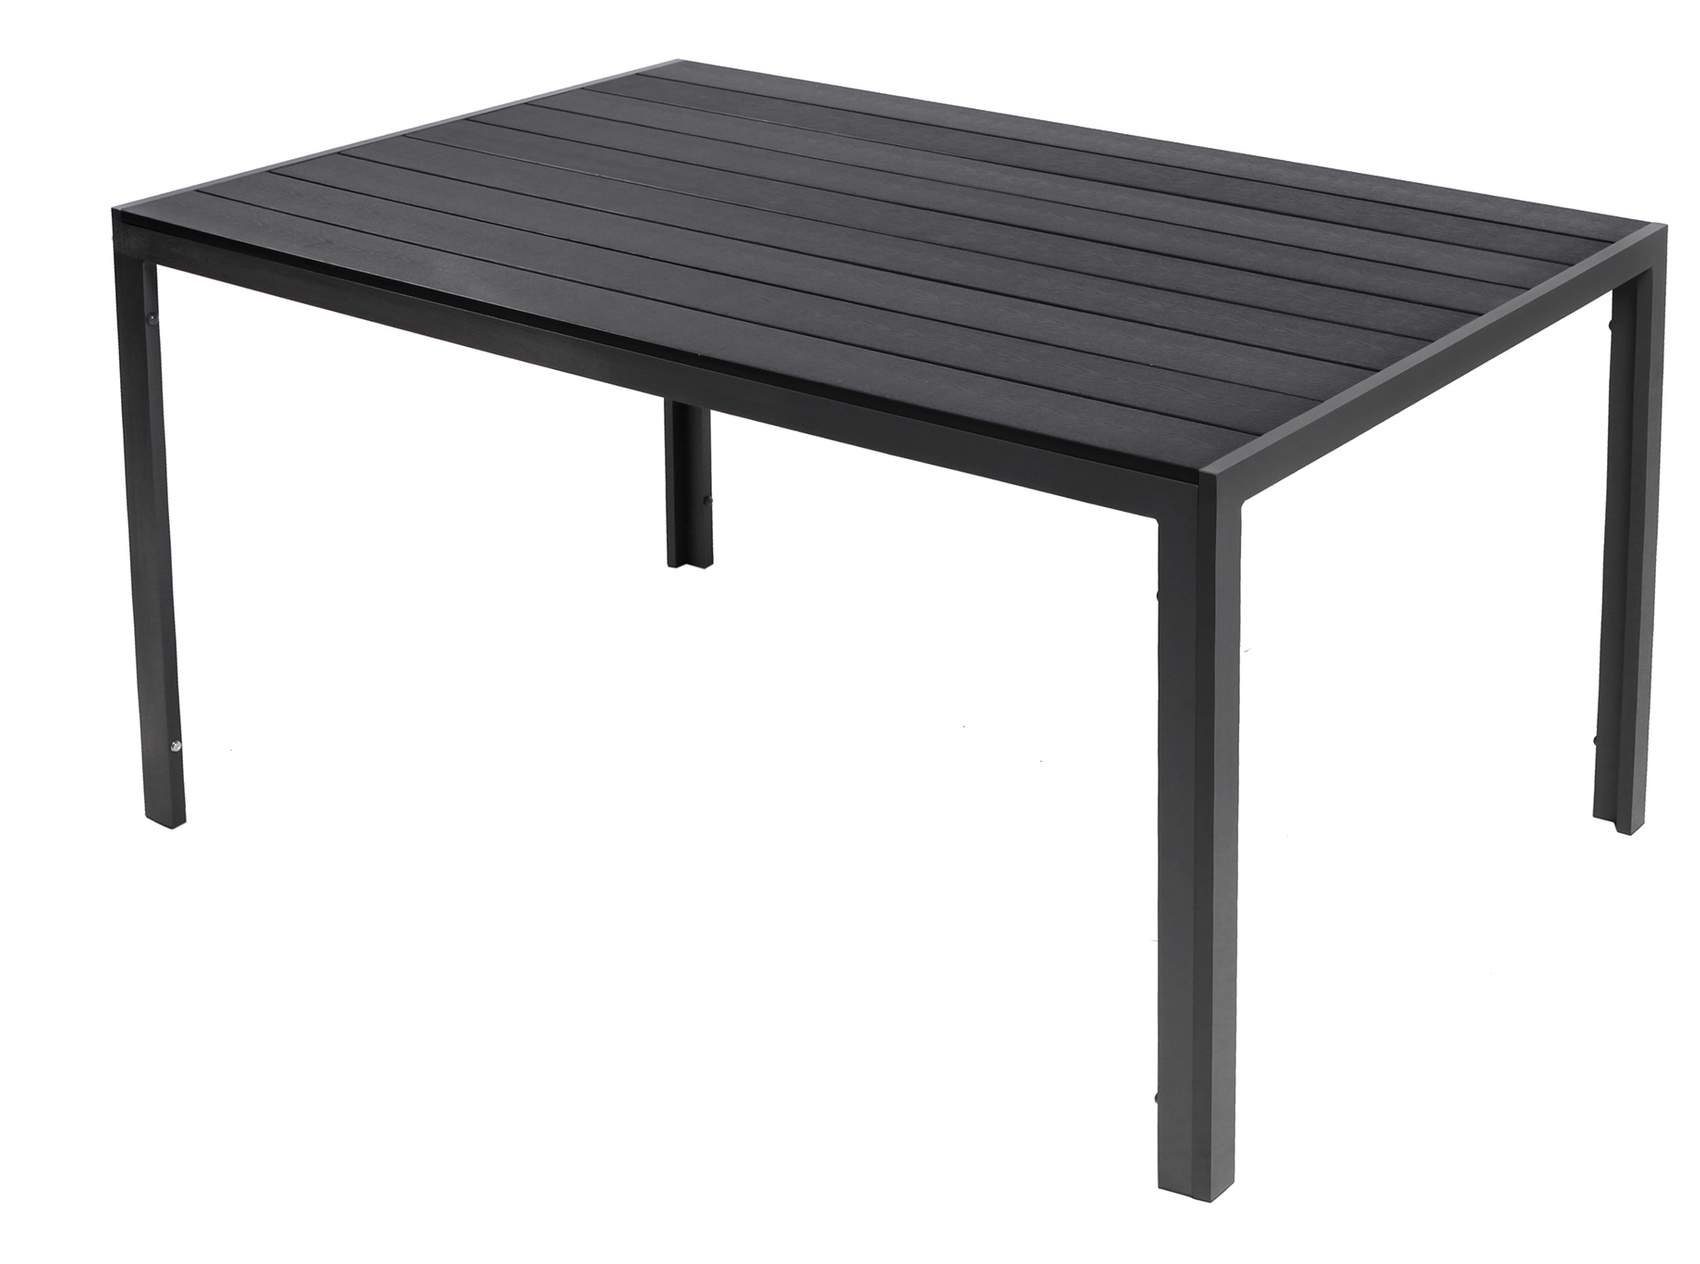 Trendmöbel24 Gartentisch Gartentisch Comfort 160 x 90 cm mit Nonwood Platte Gestell Aluminium